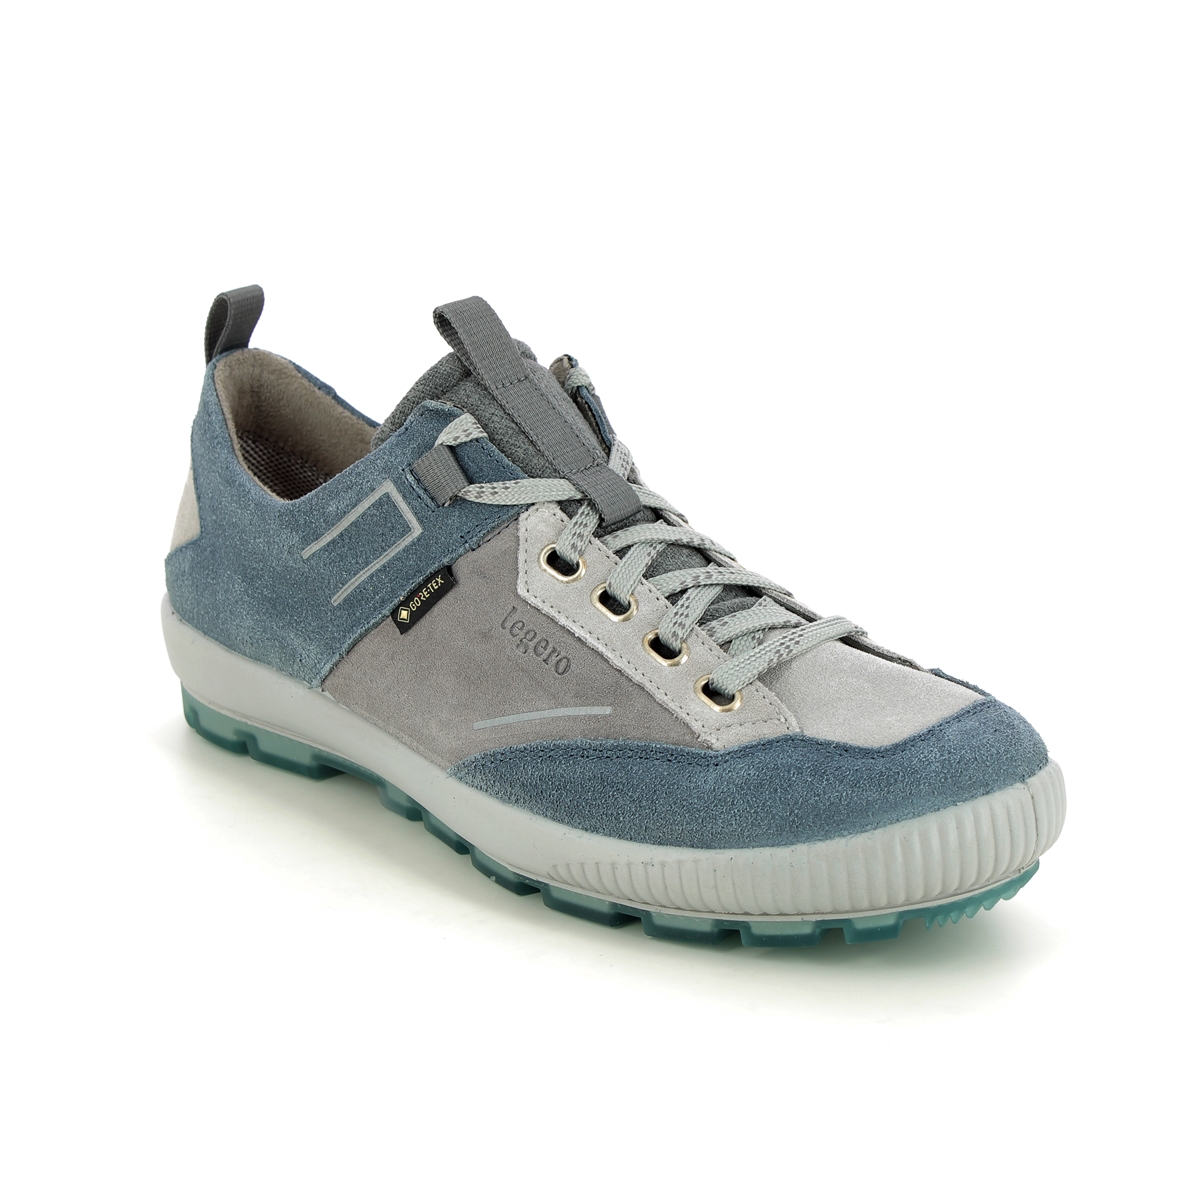 Legero Tanaro Trek Gtx Blue Womens Walking Shoes 2000126-8500 In Size 6.5 In Plain Blue